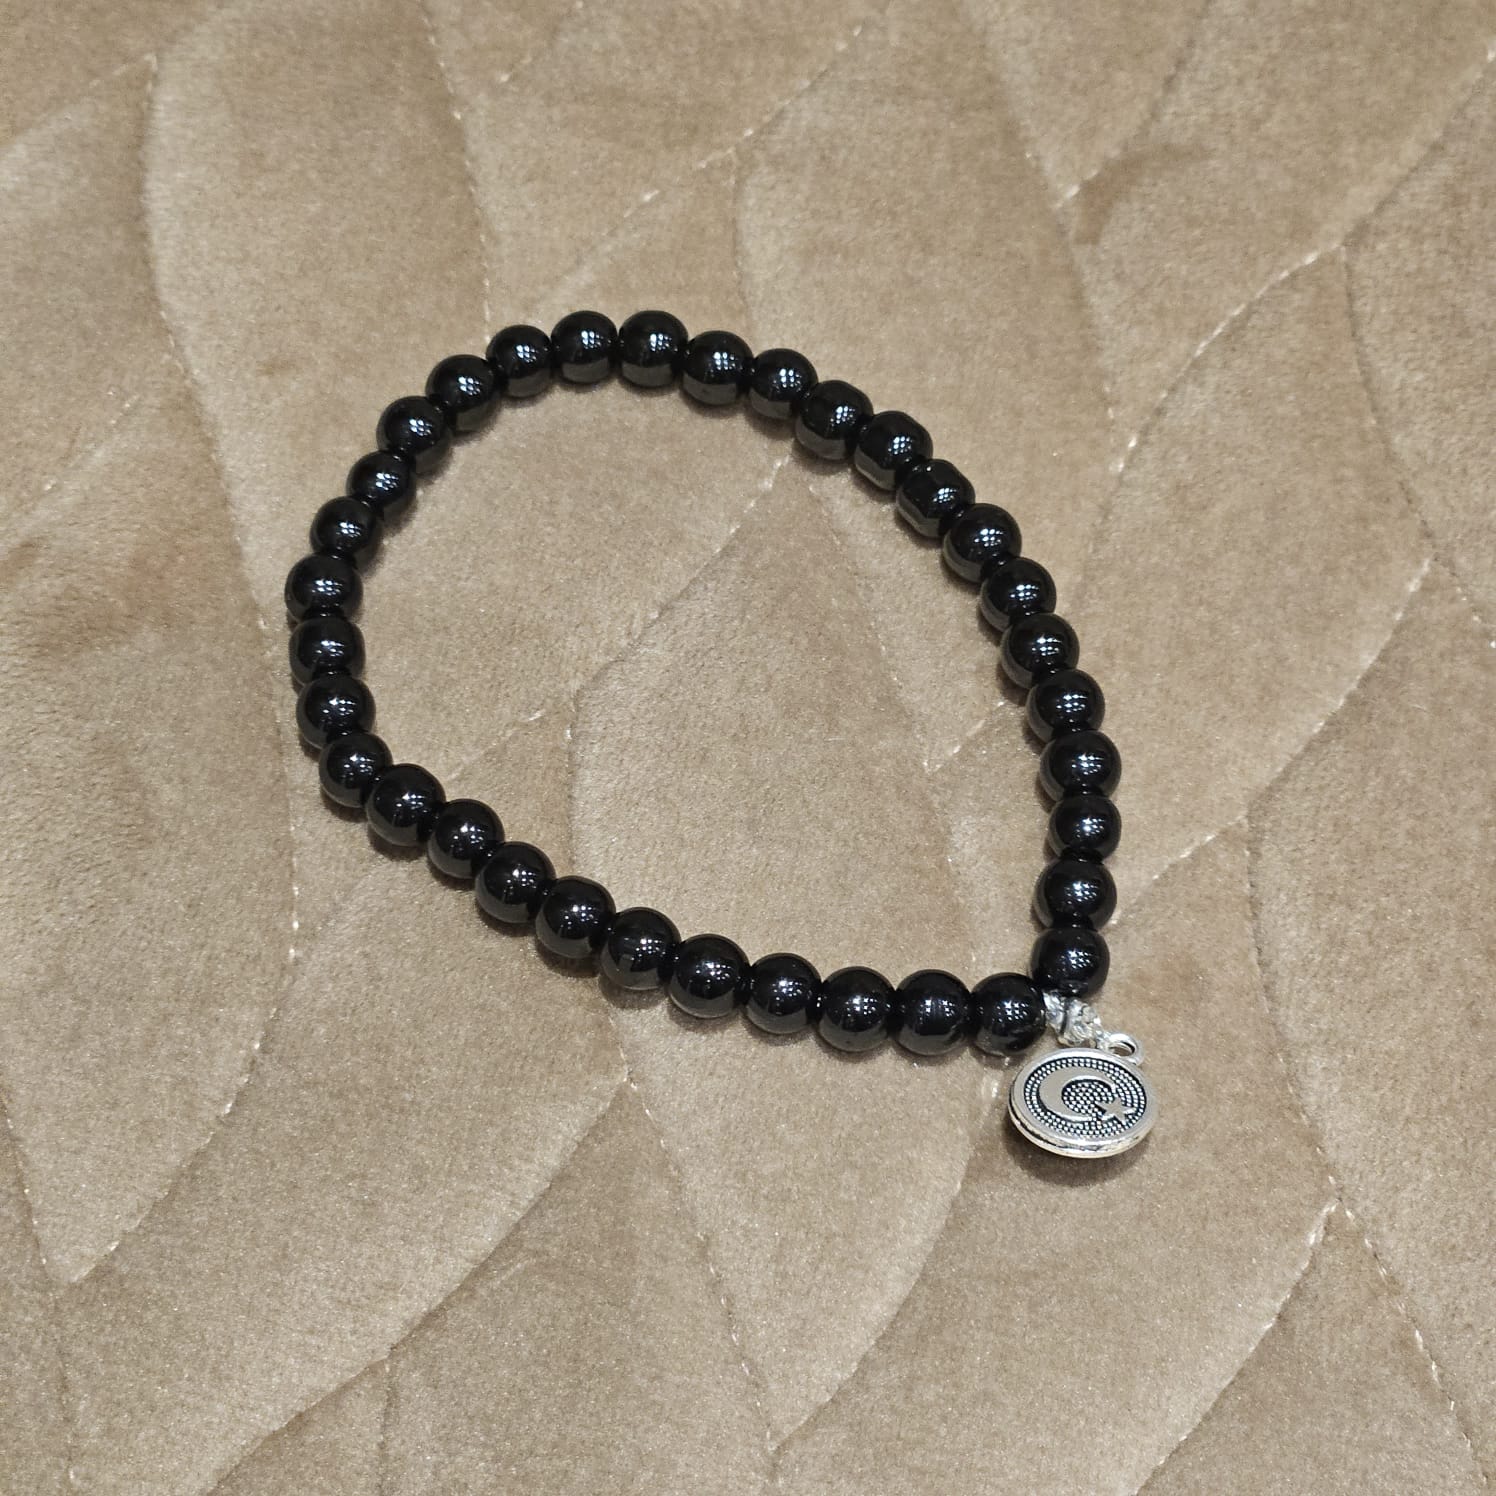 Bracelet Tasbeeh 33 Bead with Pearl Beads - Black